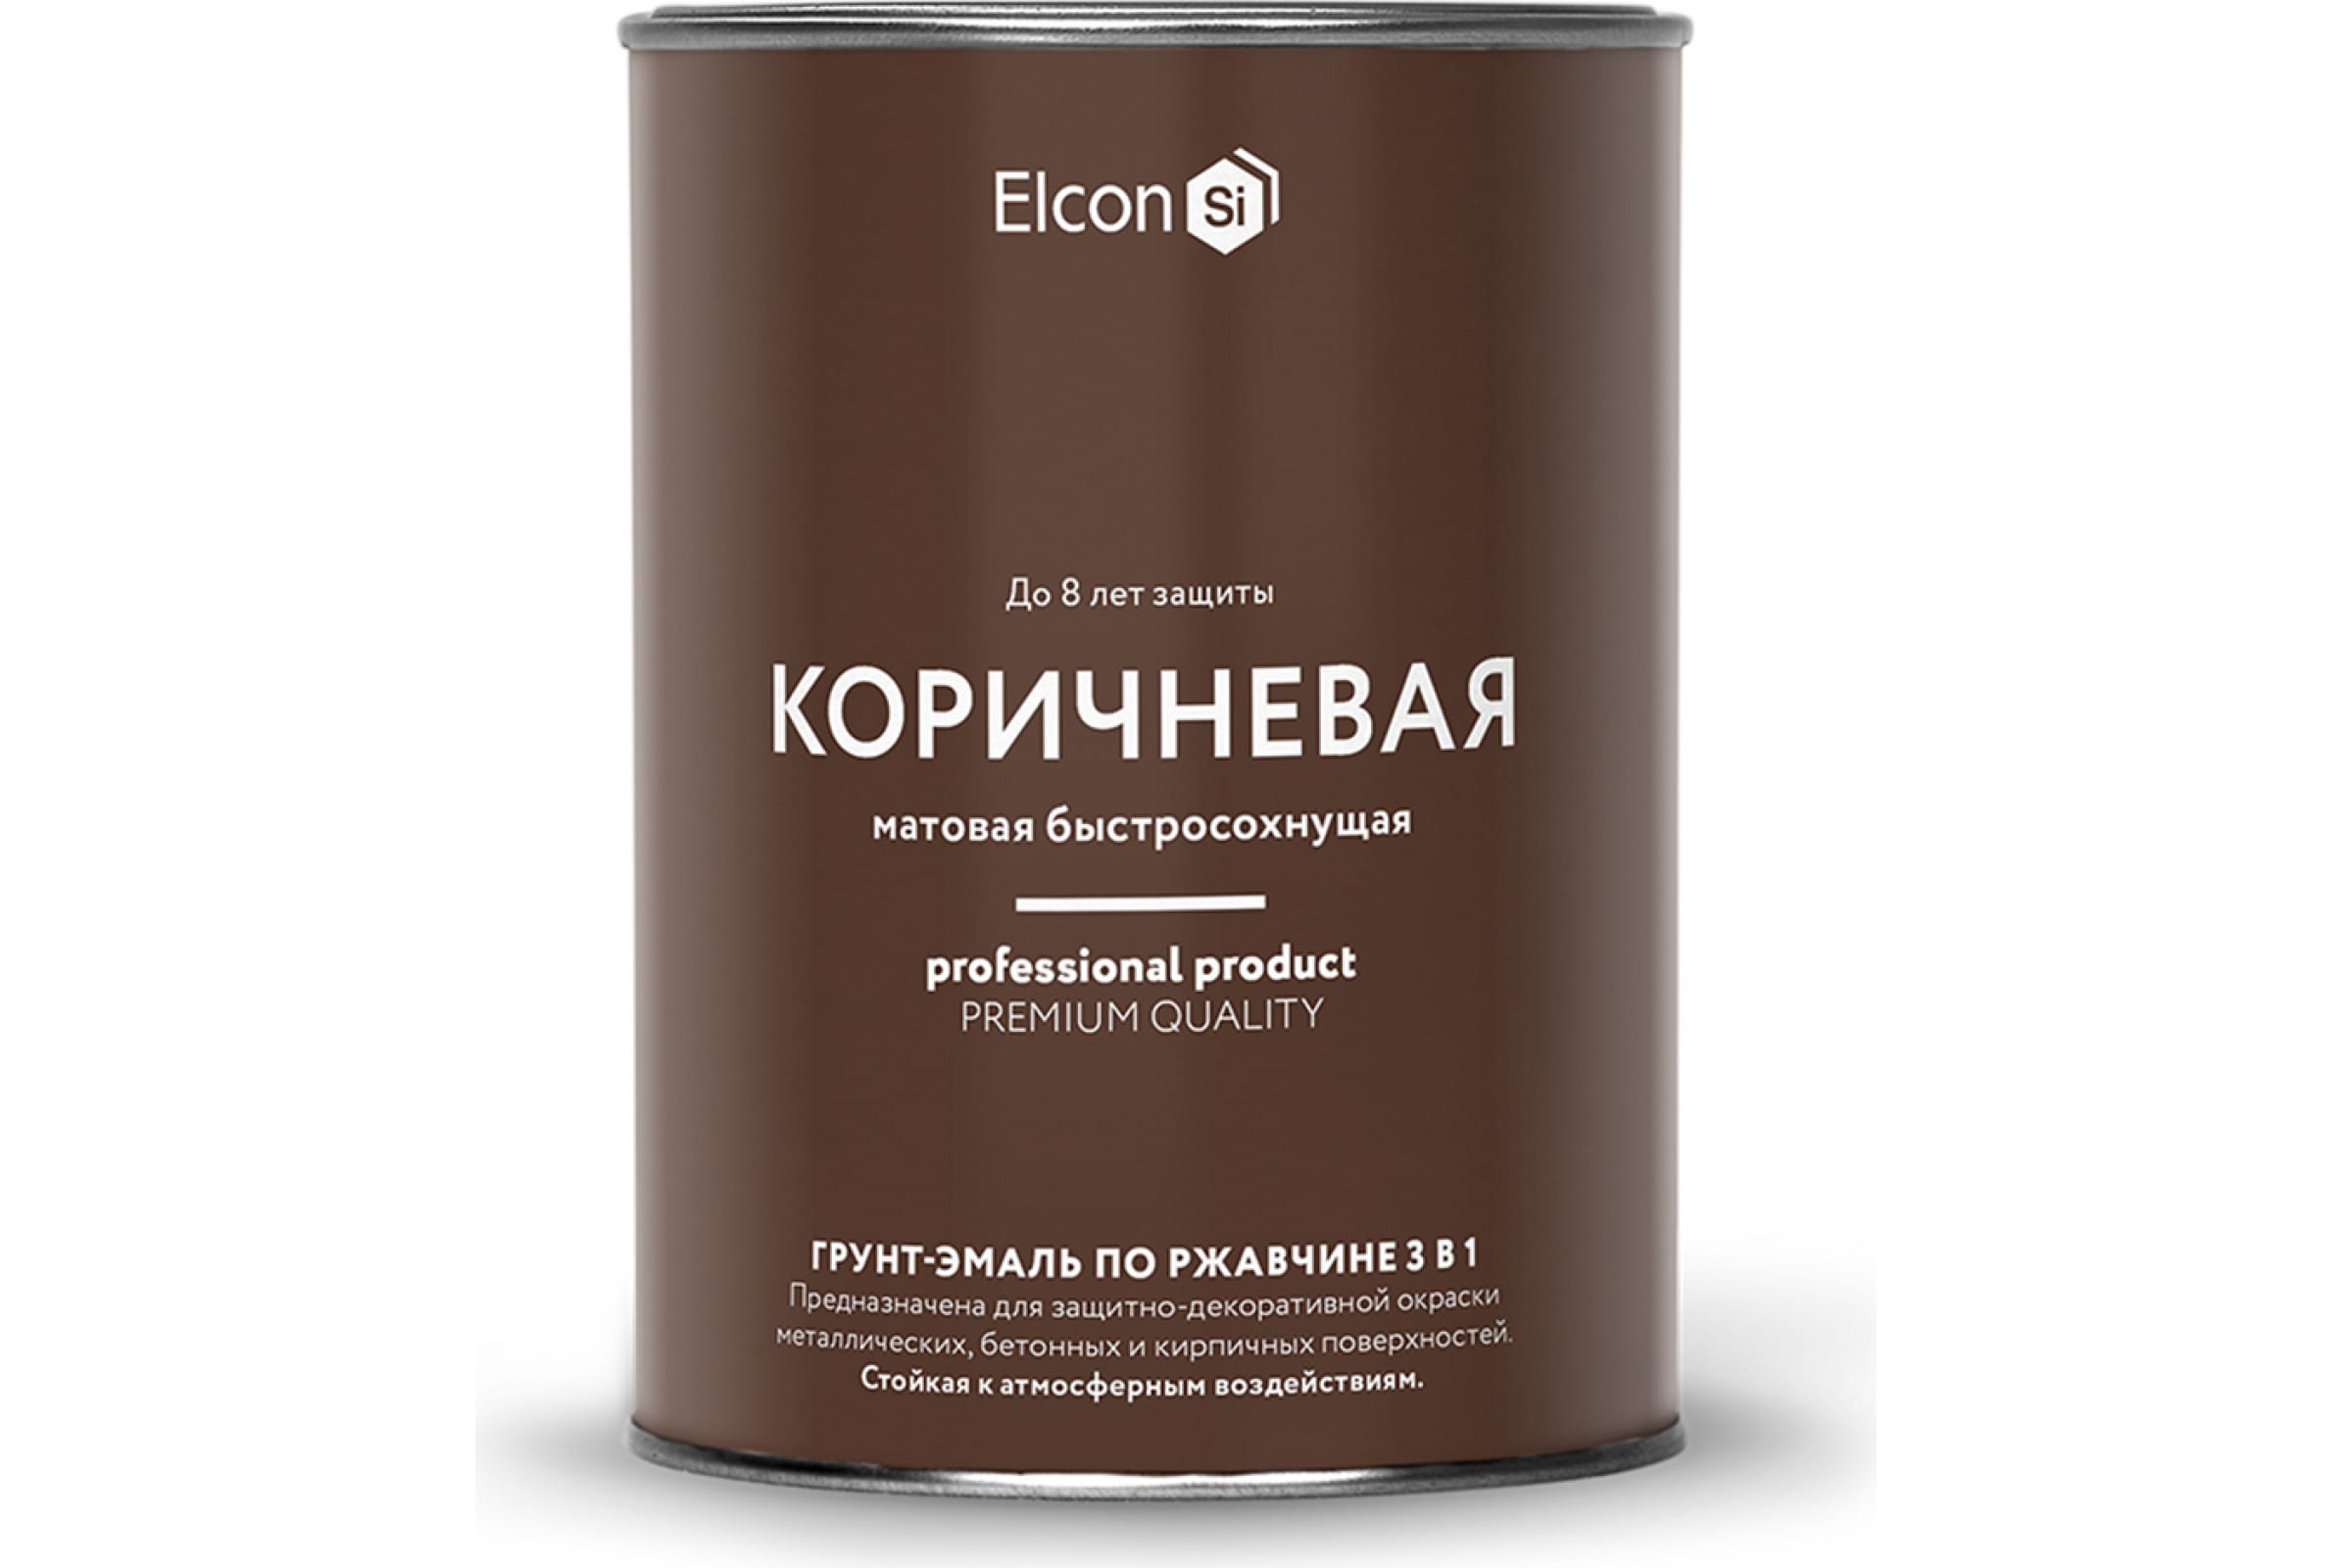 Грунт-эмаль Elcon по ржавчине, Elcon, 0,8 кг, коричневая грунт эмаль decotech 3в1 шоколадно коричневая ral8017 0 9кг